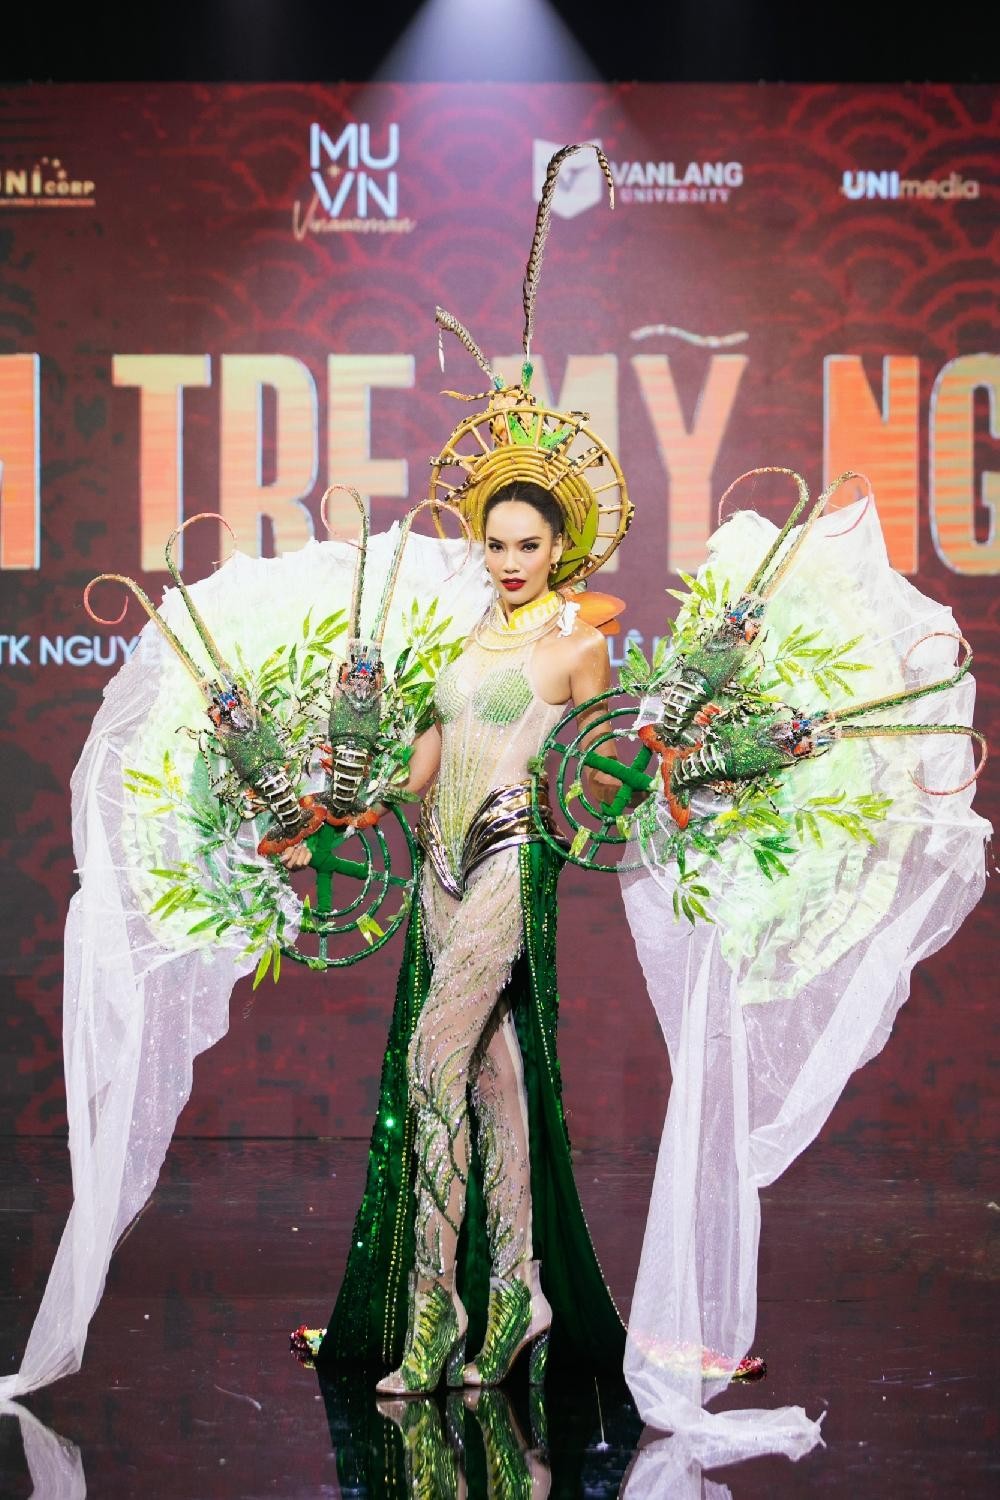 Thiết kế nào được chọn làm Trang phục Dân tộc cho tân Hoa hậu Hoàn vũ Việt Nam? ảnh 8